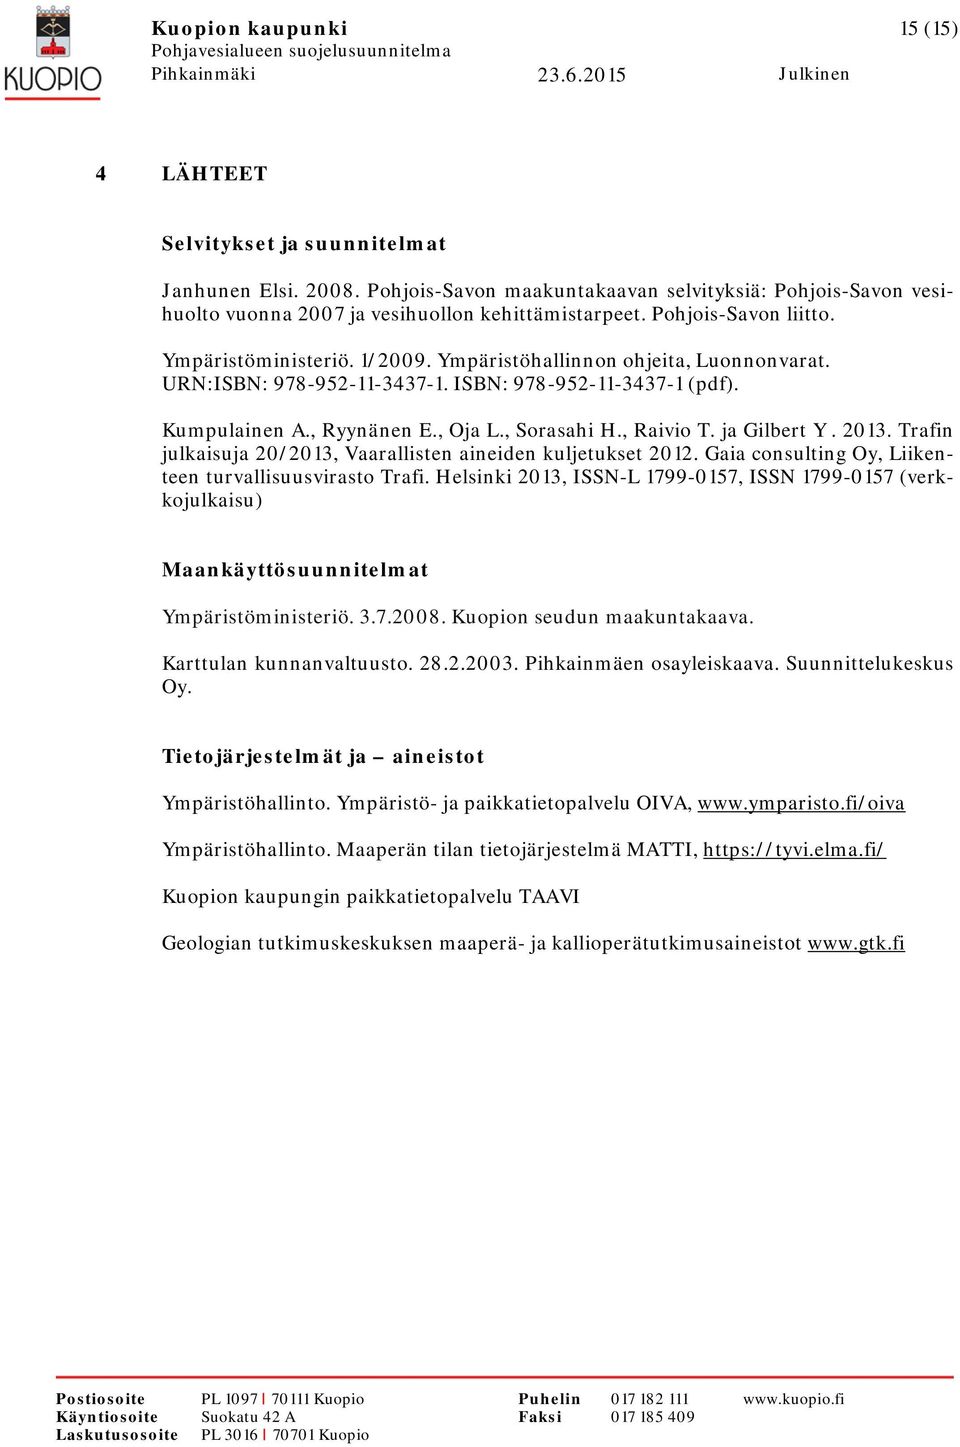 , Sorasahi H., Raivio T. ja Gilbert Y. 2013. Trafin julkaisuja 20/2013, Vaarallisten aineiden kuljetukset 2012. Gaia consulting Oy, Liikenteen turvallisuusvirasto Trafi.